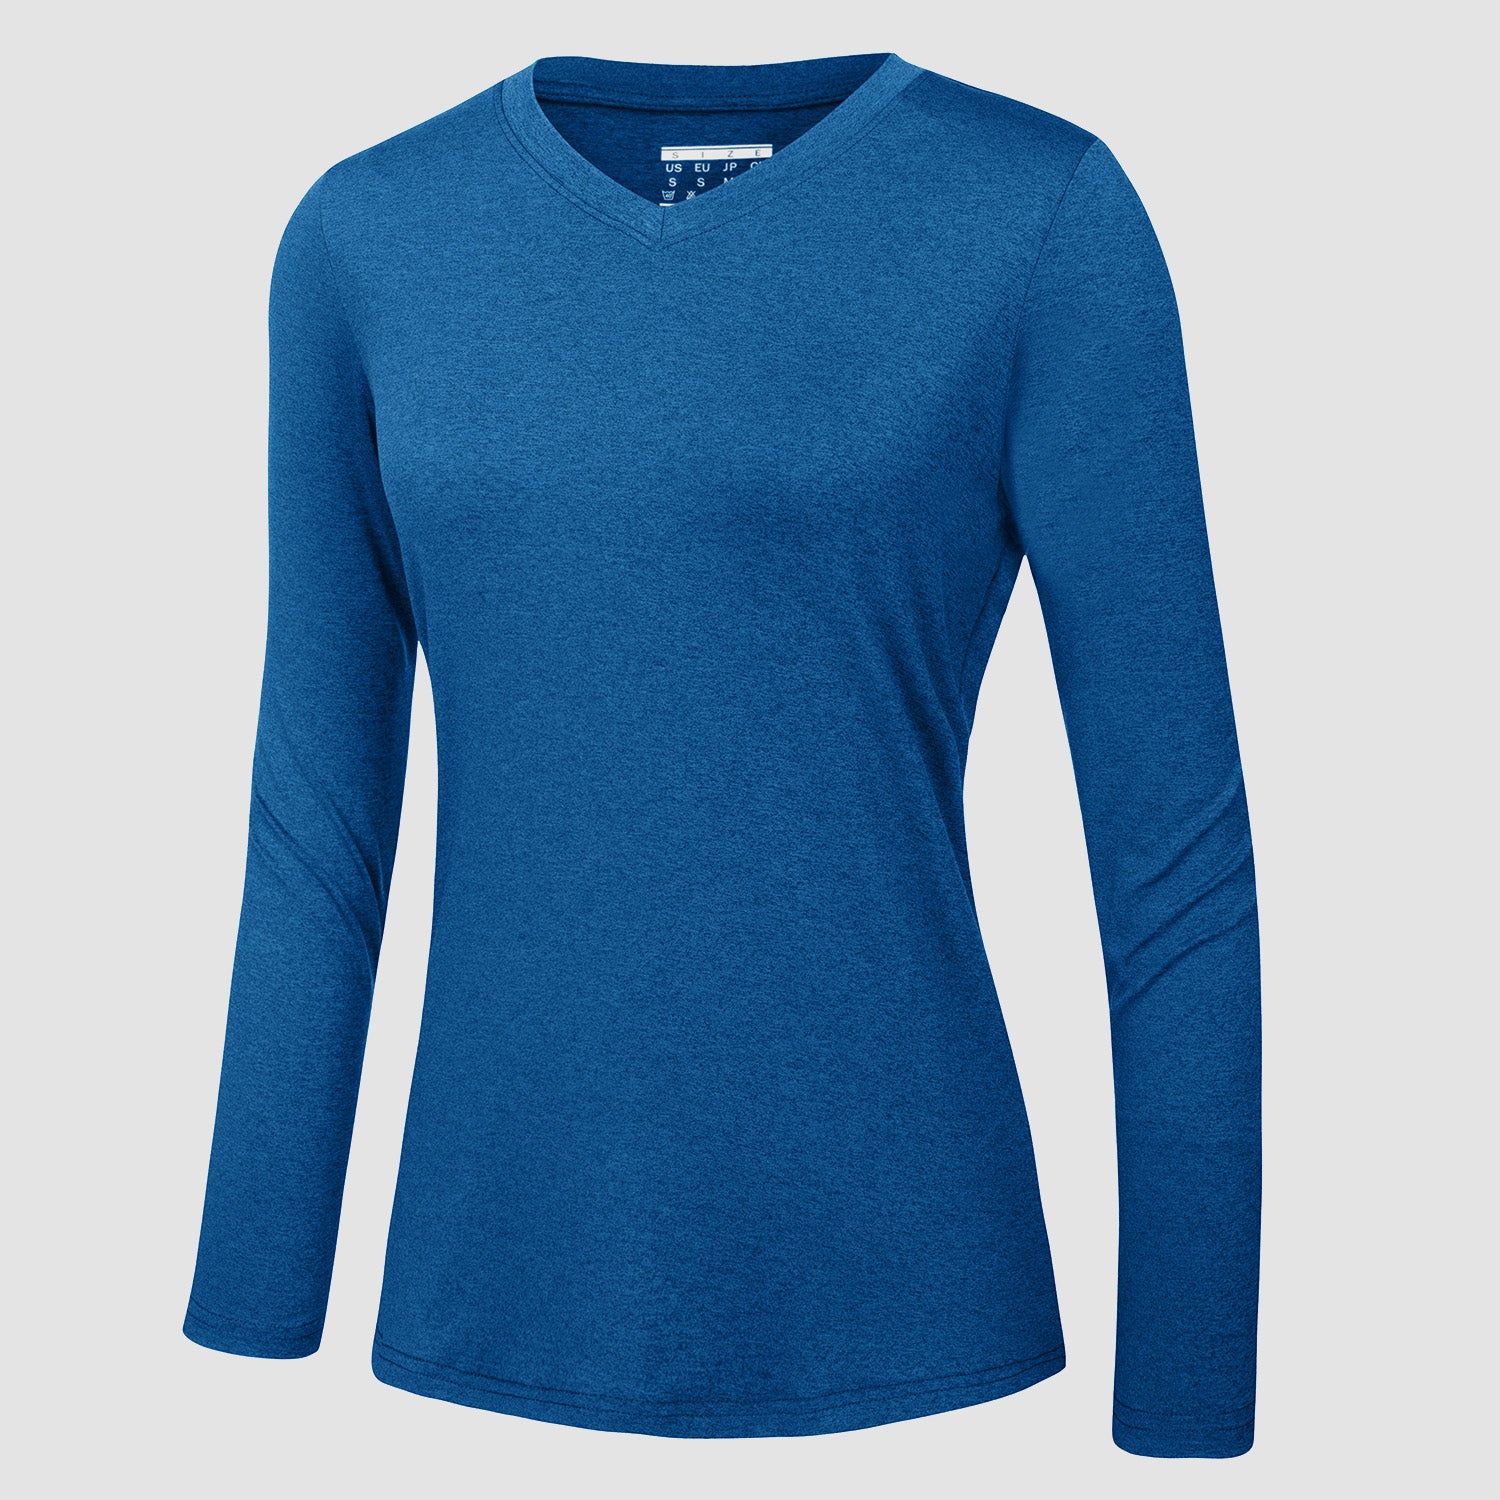 https://magcomsen.com/cdn/shop/products/Women_s-Long-Sleeve-Shirt-V-Neck-SPF-Shirts-UPF-50_-Quick-Dry-Workout-Hiking-Tee-Shirts-Rashguard_25.jpg?v=1666680575&width=1500